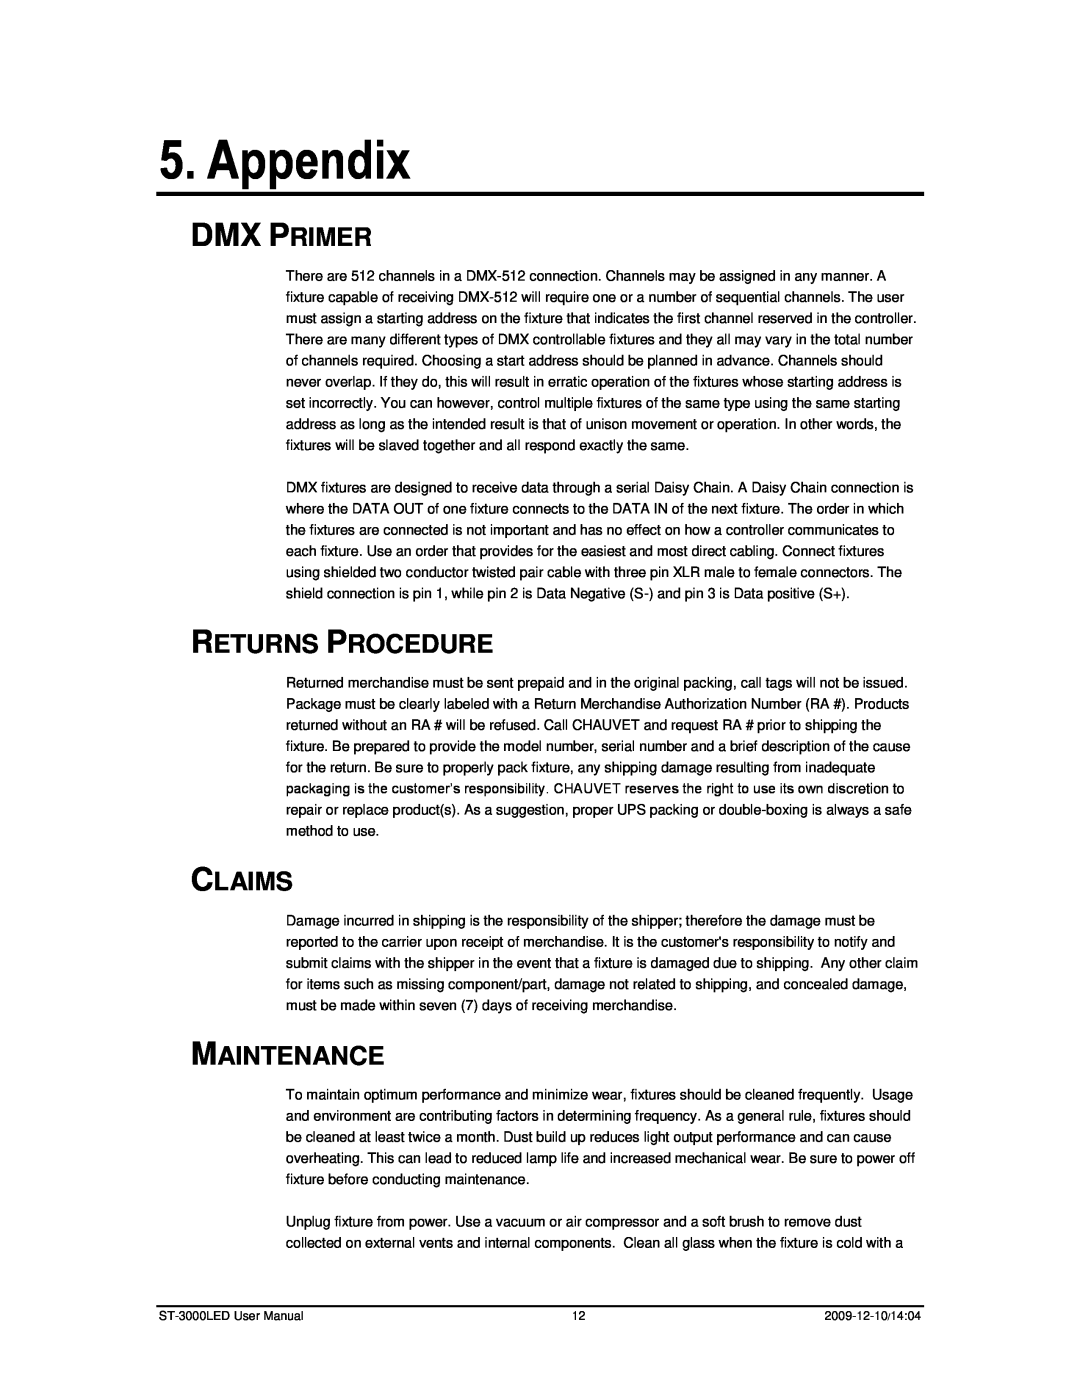 Chauvet ST-3000LED user manual Appendix, Dmx Primer, Returns Procedure, Claims, Maintenance 